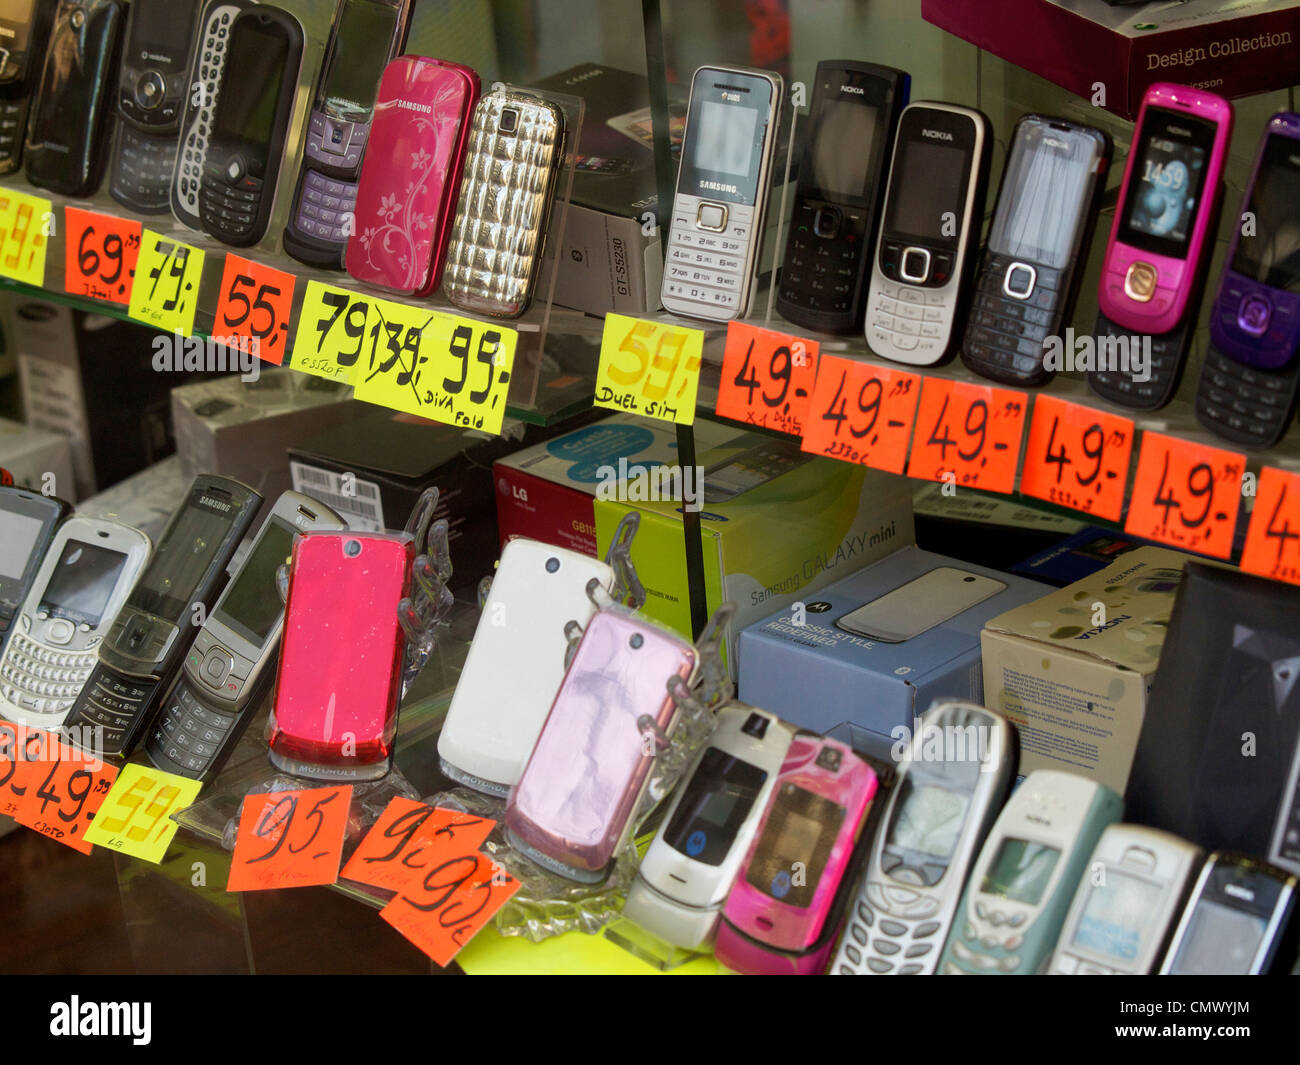 Telefoni economici immagini e fotografie stock ad alta risoluzione - Alamy